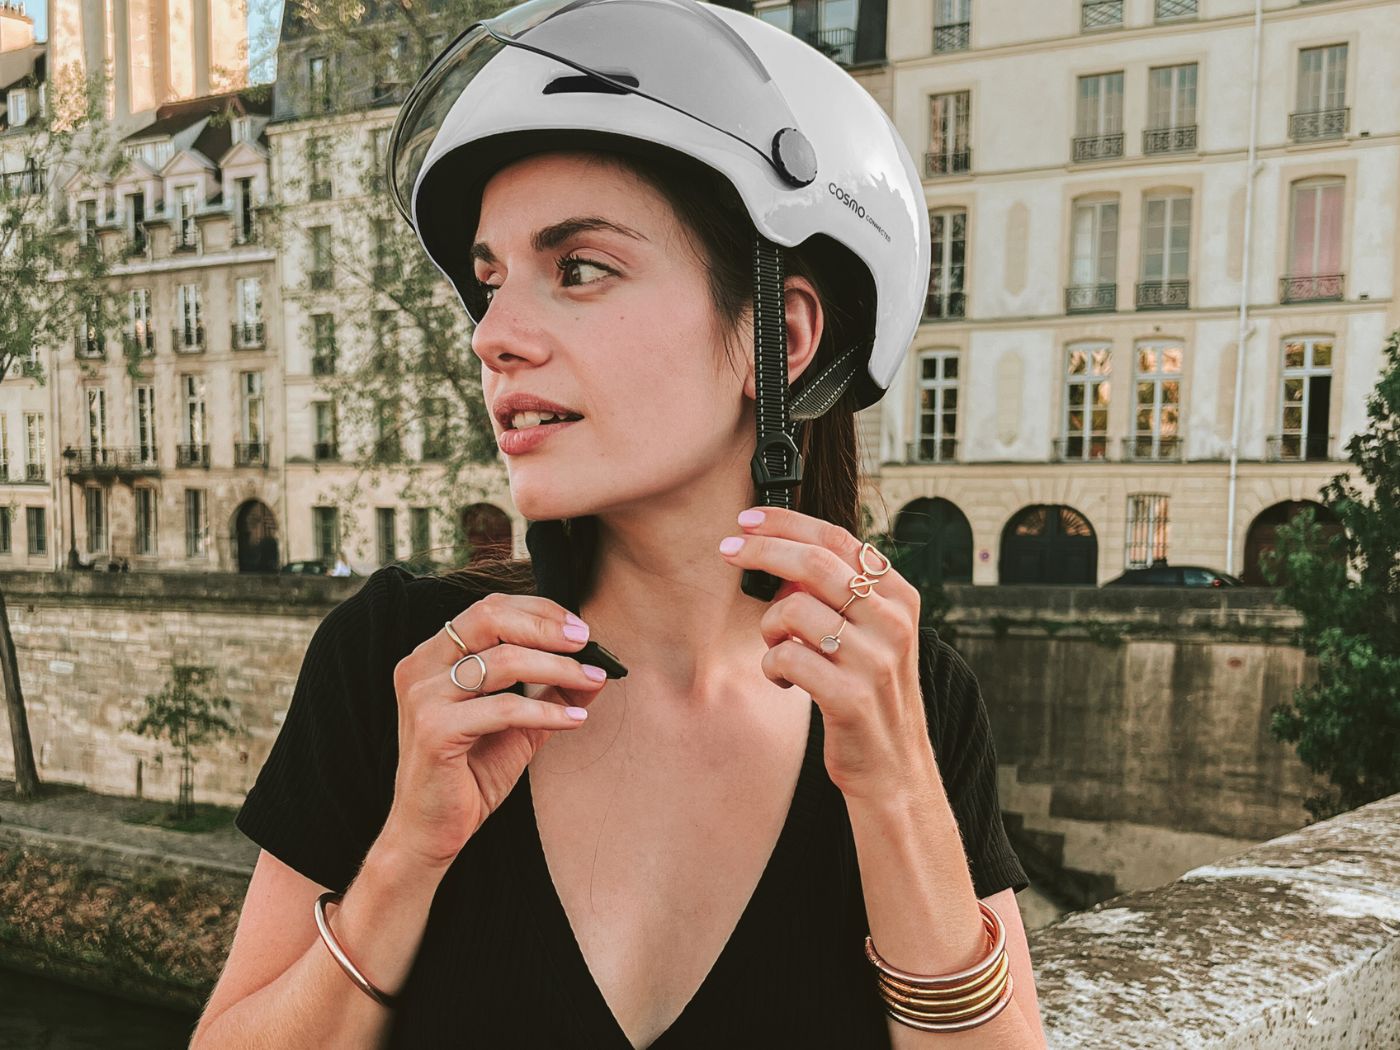 Casque vélo électrique femme : l’accessoire à adopter !